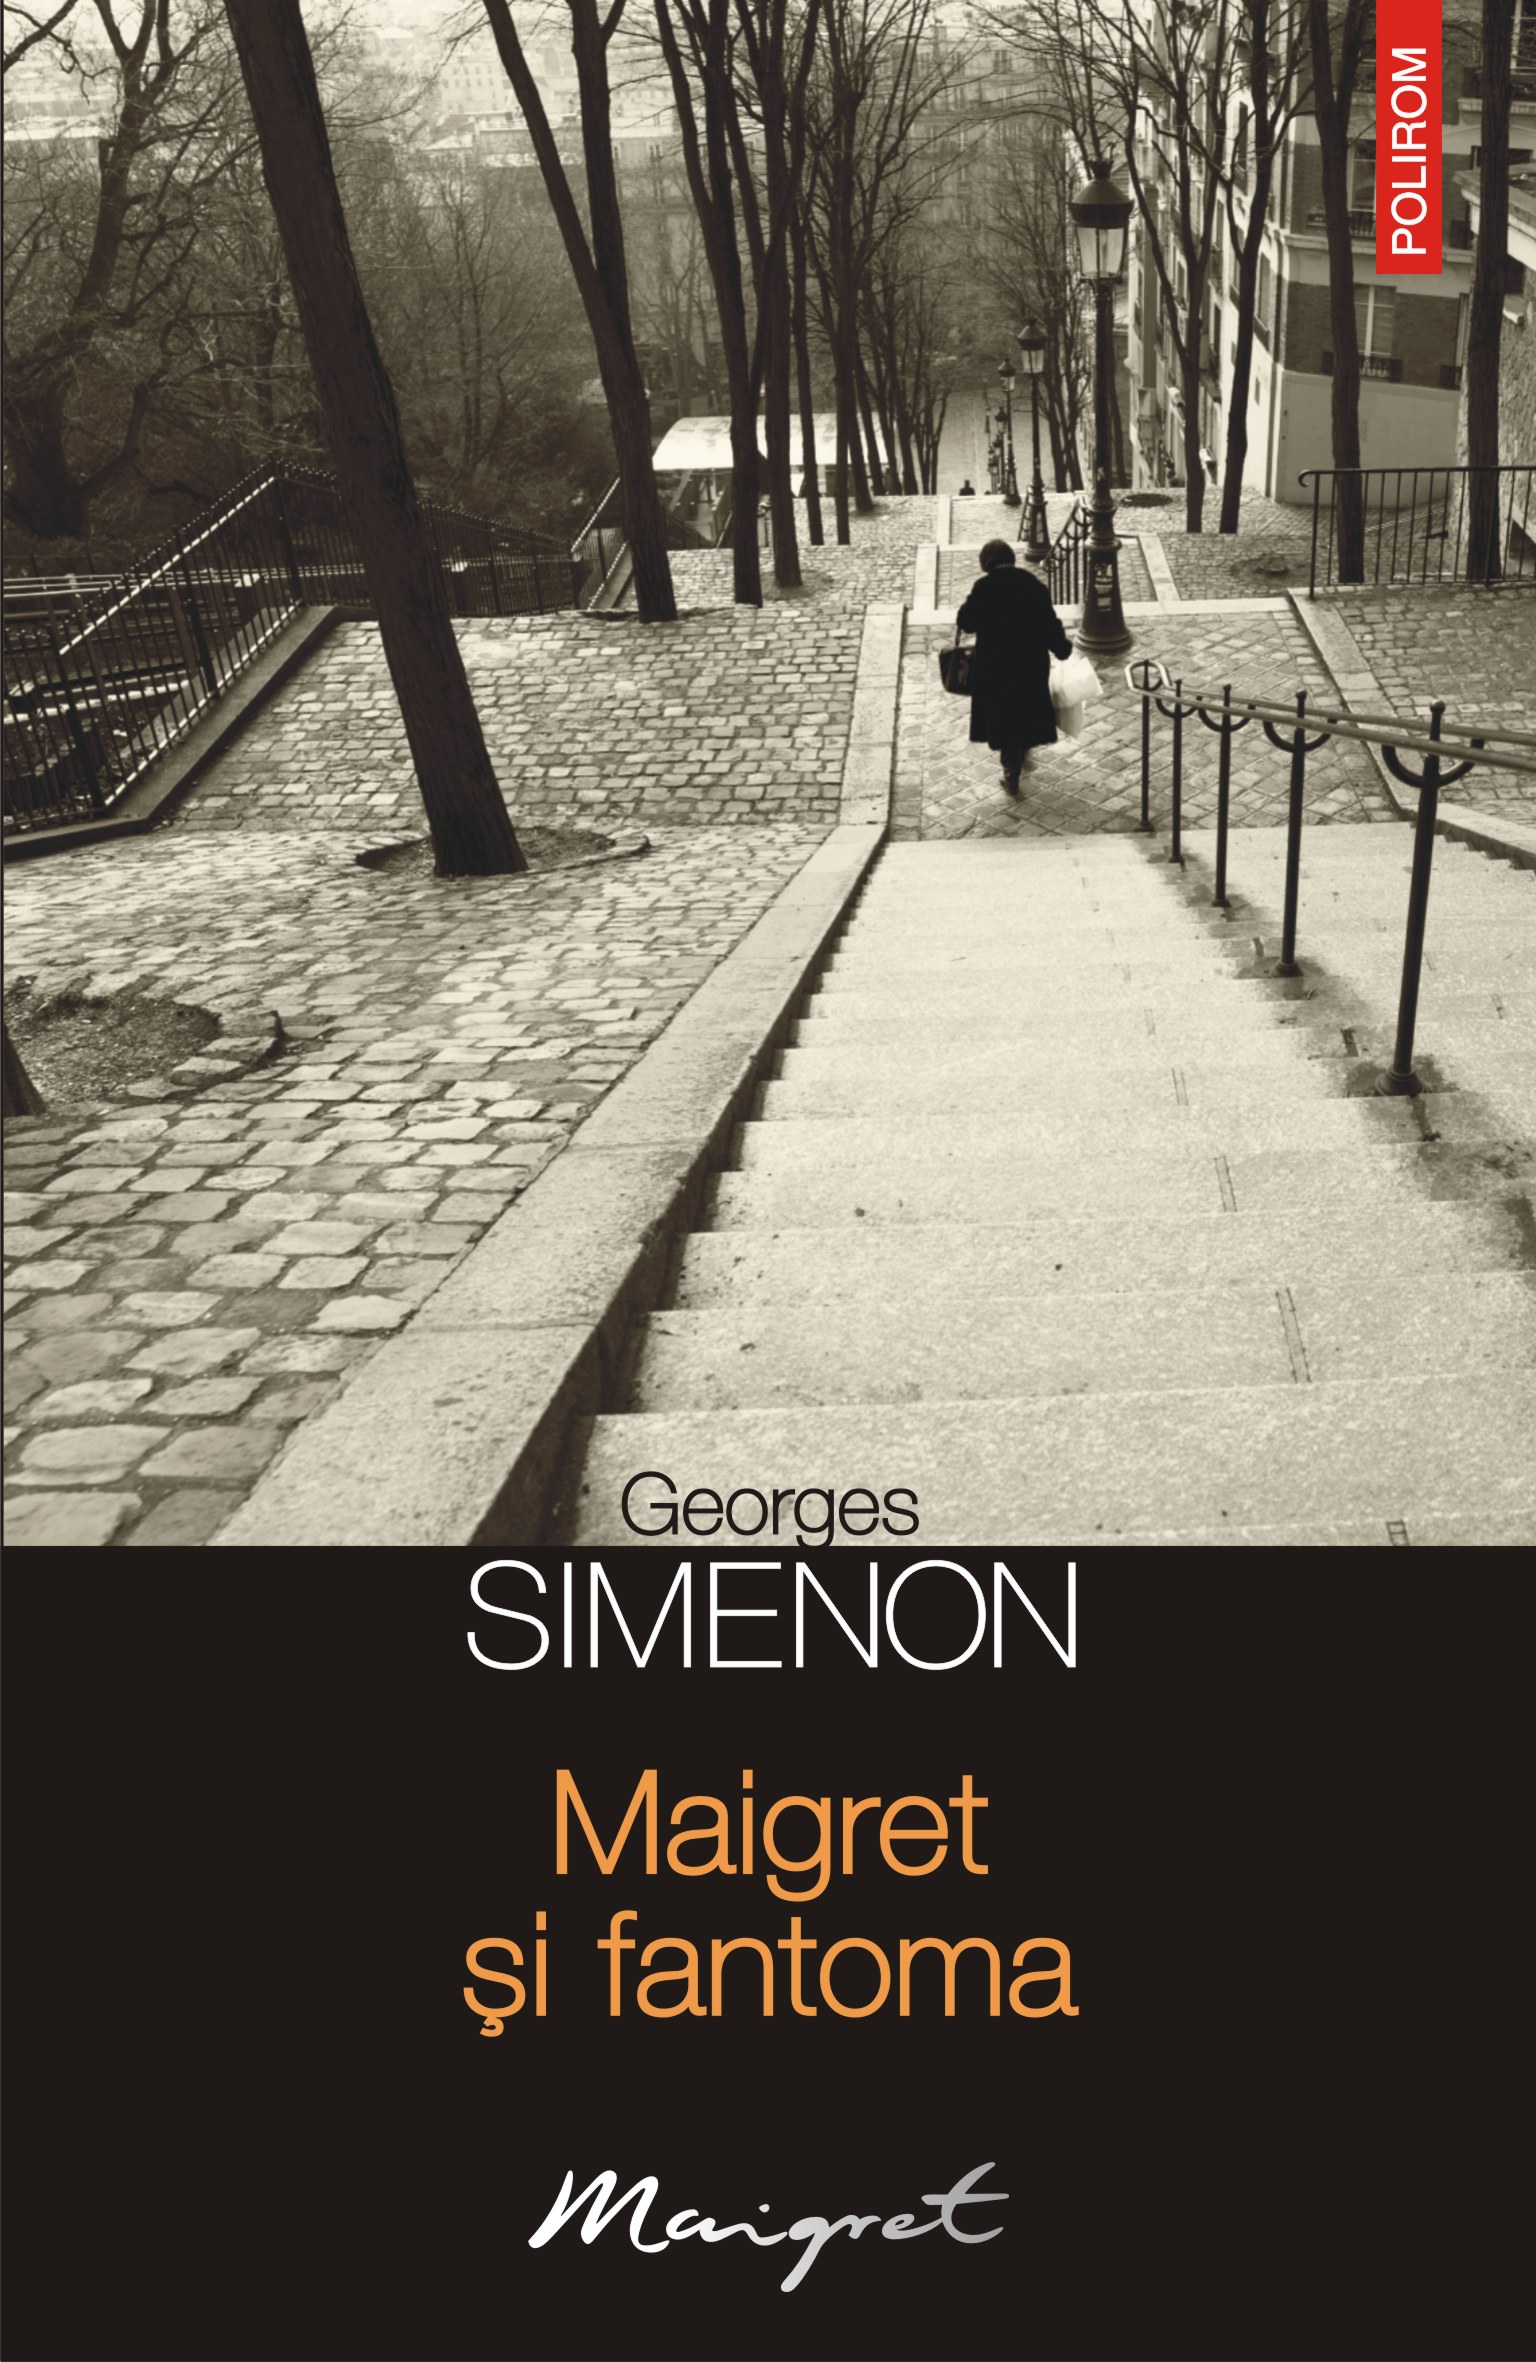 eBook Maigret si fantoma - Georges Simenon